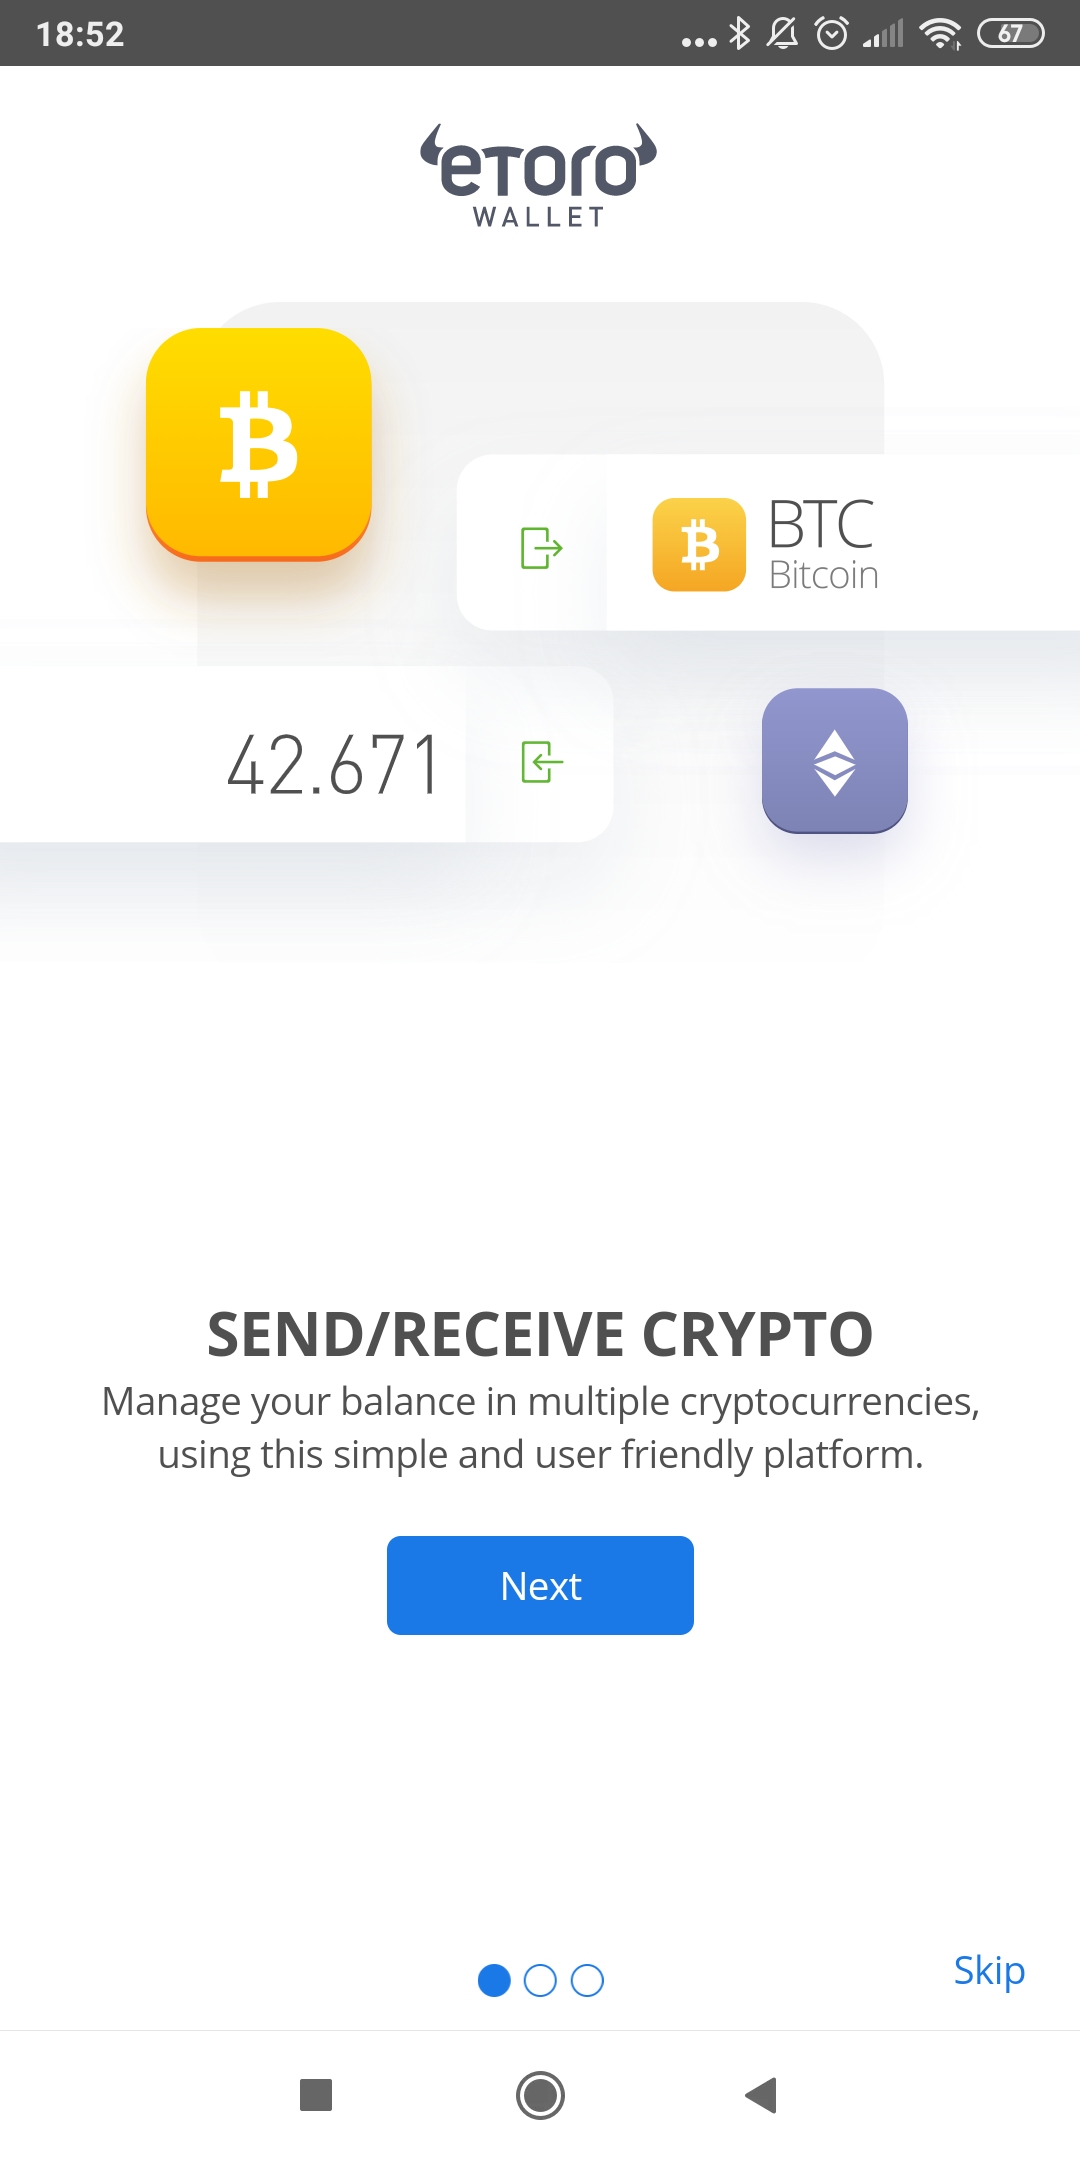 inviare bitcoin al portafoglio forum minerario bitcoin